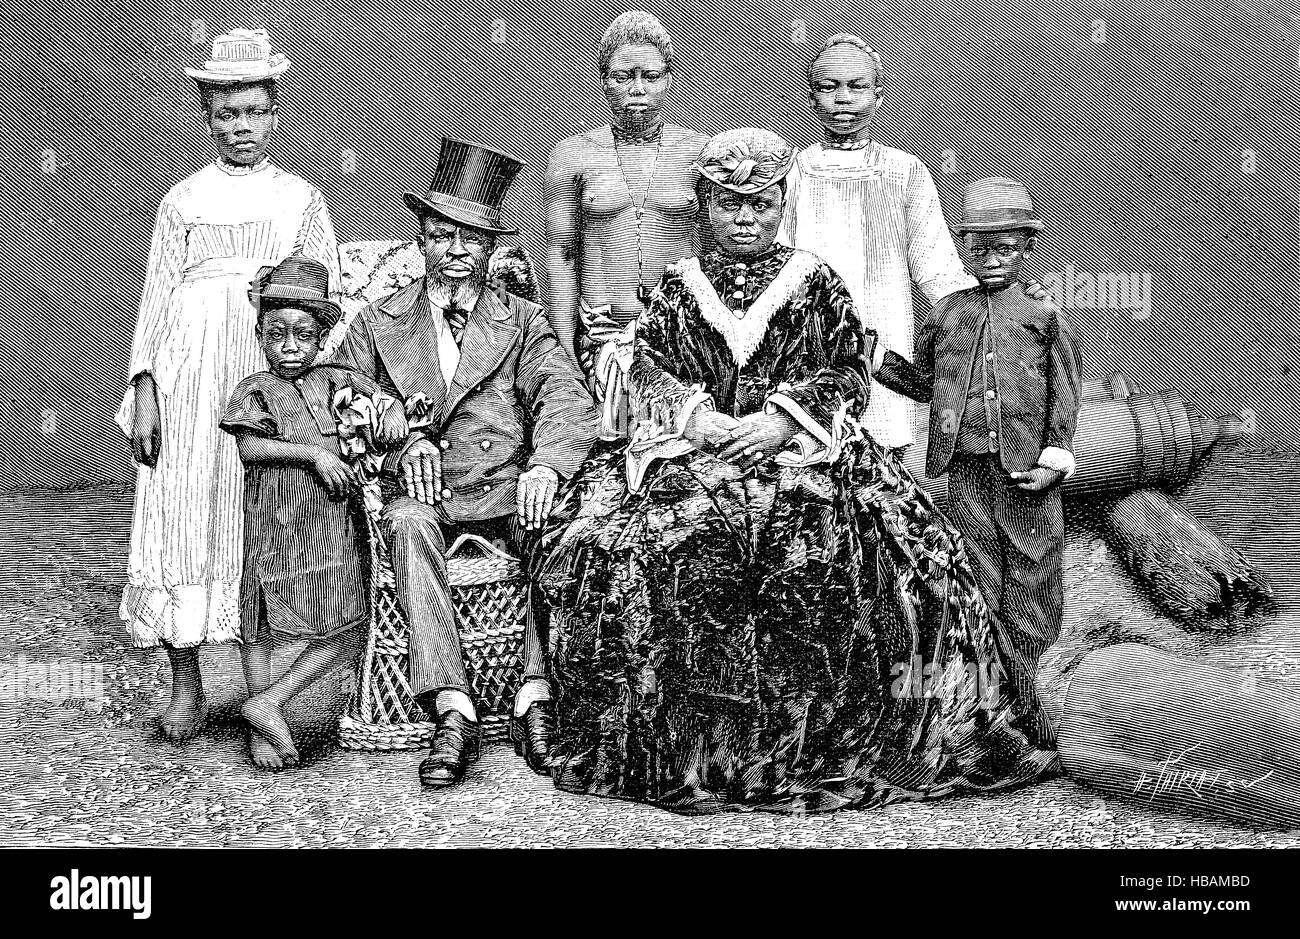 Famille noble de Porto-Novo, Hogbonu et Ajashe, la capitale du Bénin, Afrique, hictorical illustration de 1880 Banque D'Images